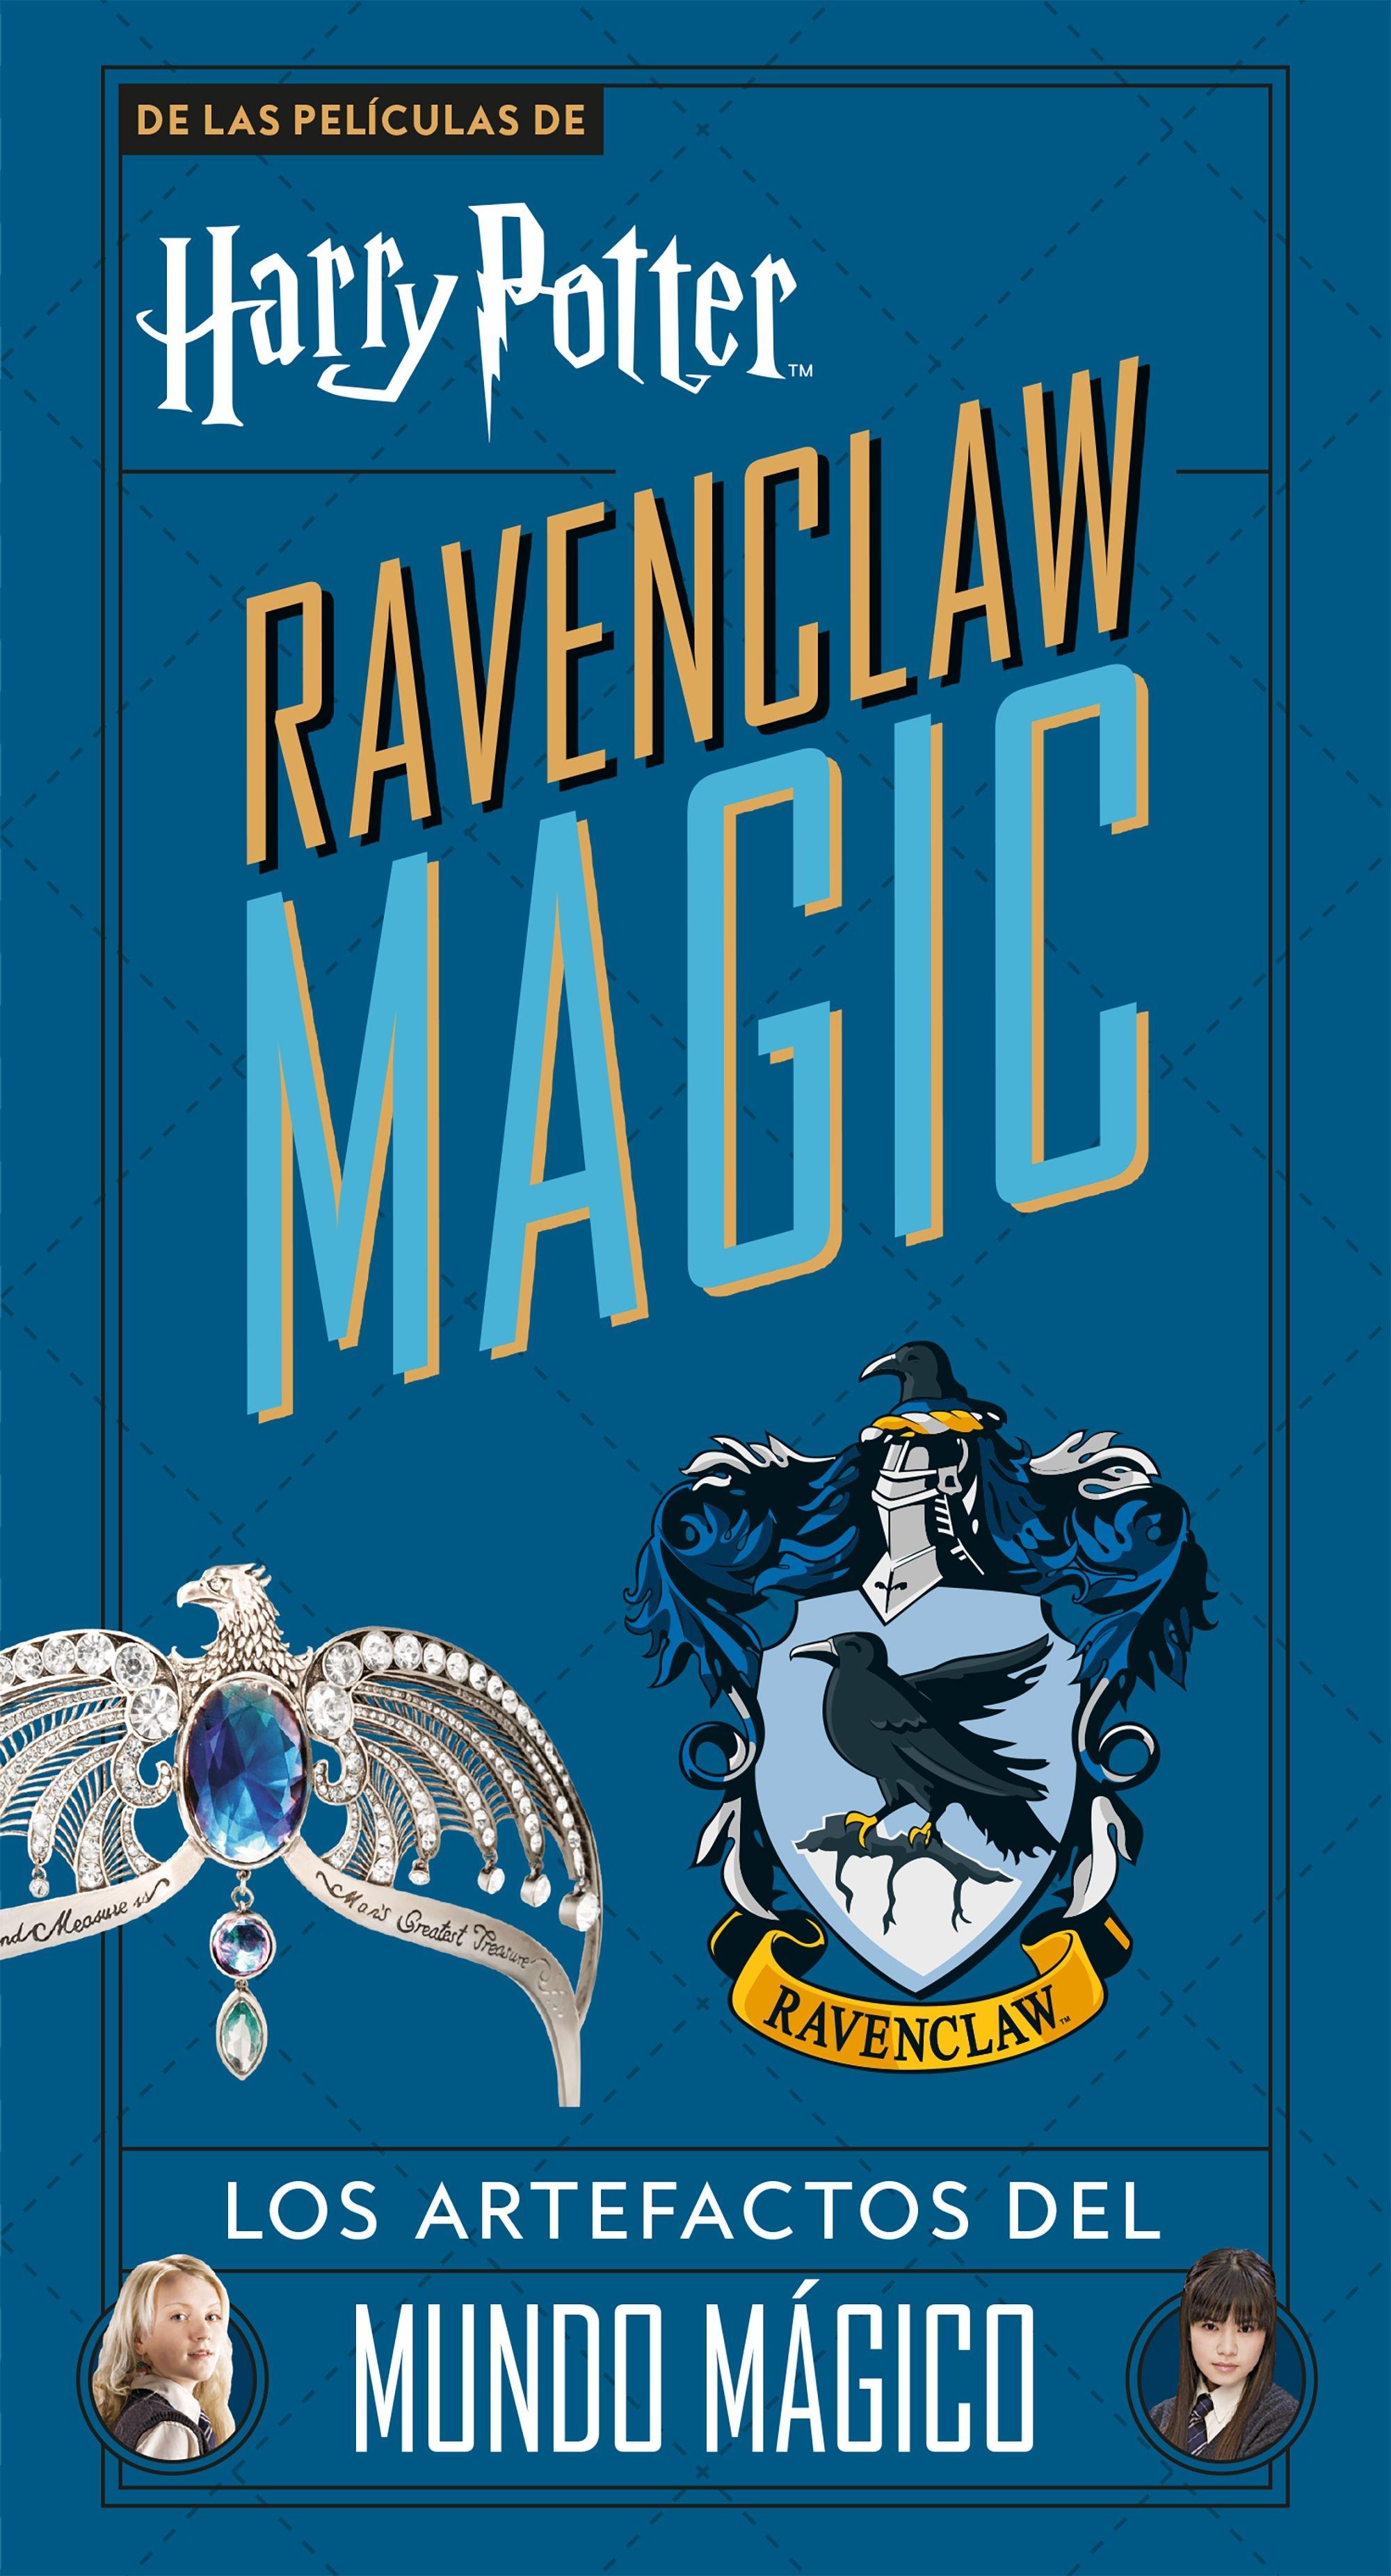 Harry Potter Ravenclaw Magic "Los artefactos de Mundo mágico"